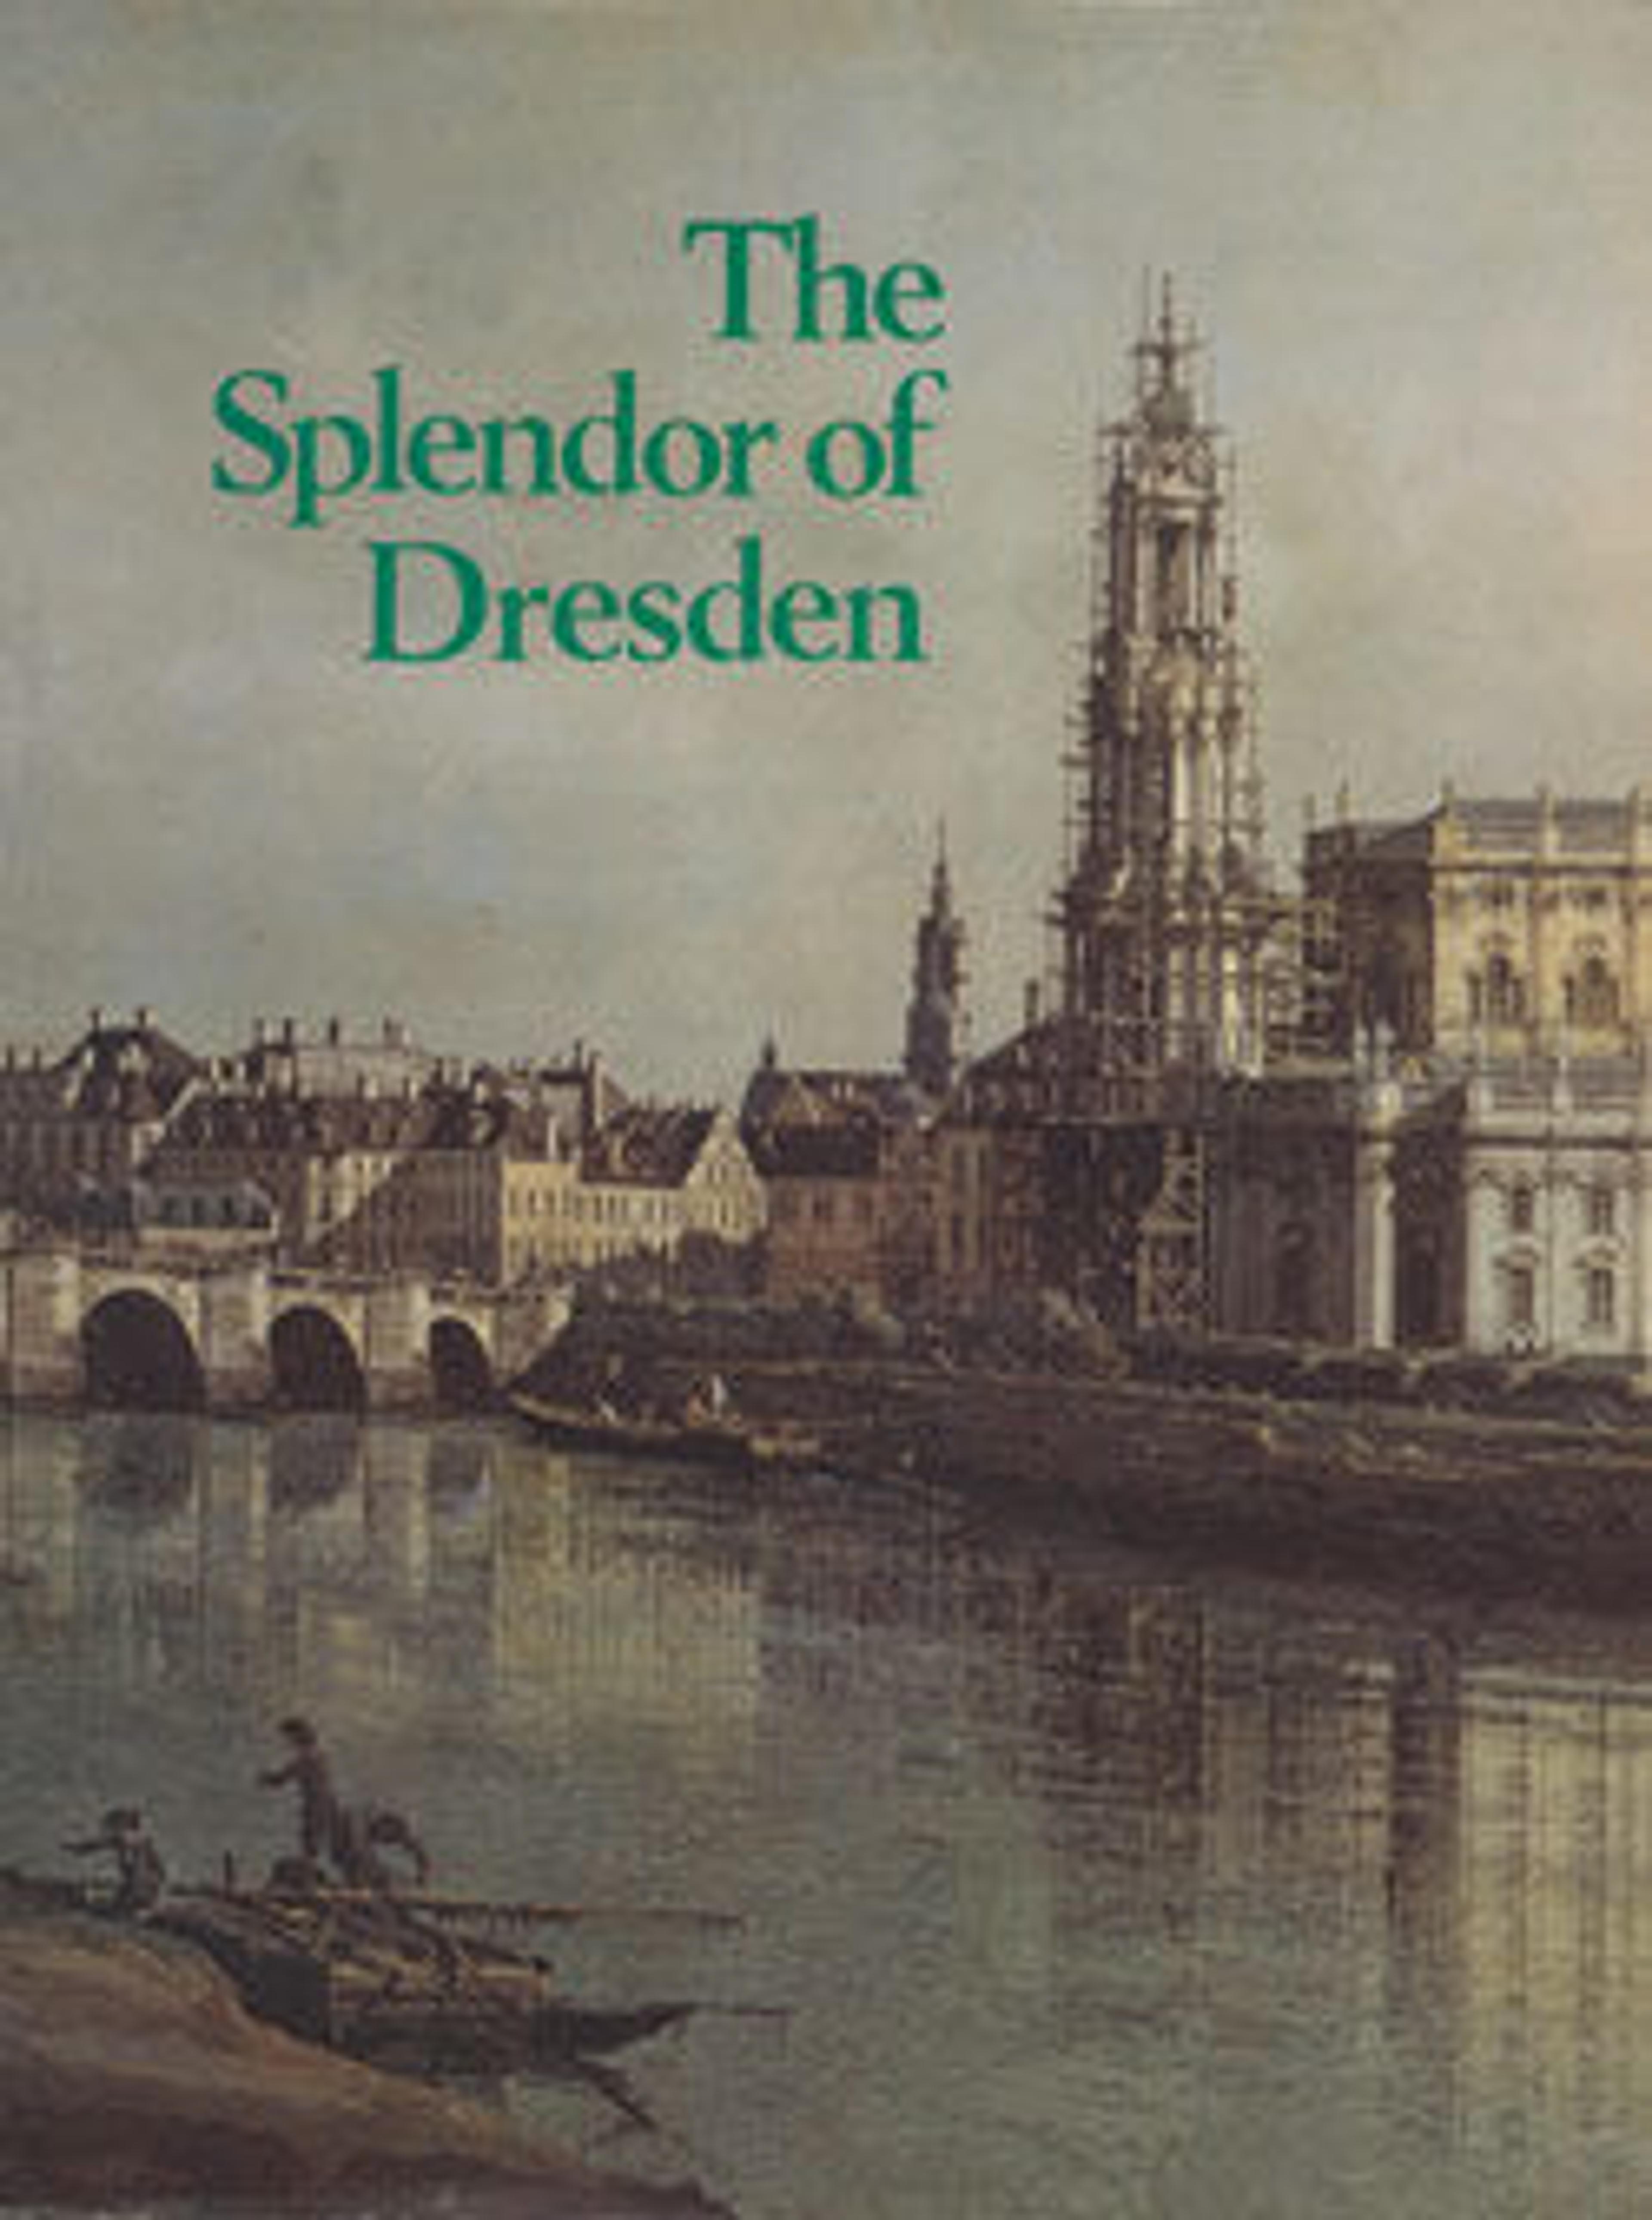 The Splendor of Dresden: Five Centuries of Art Collecting